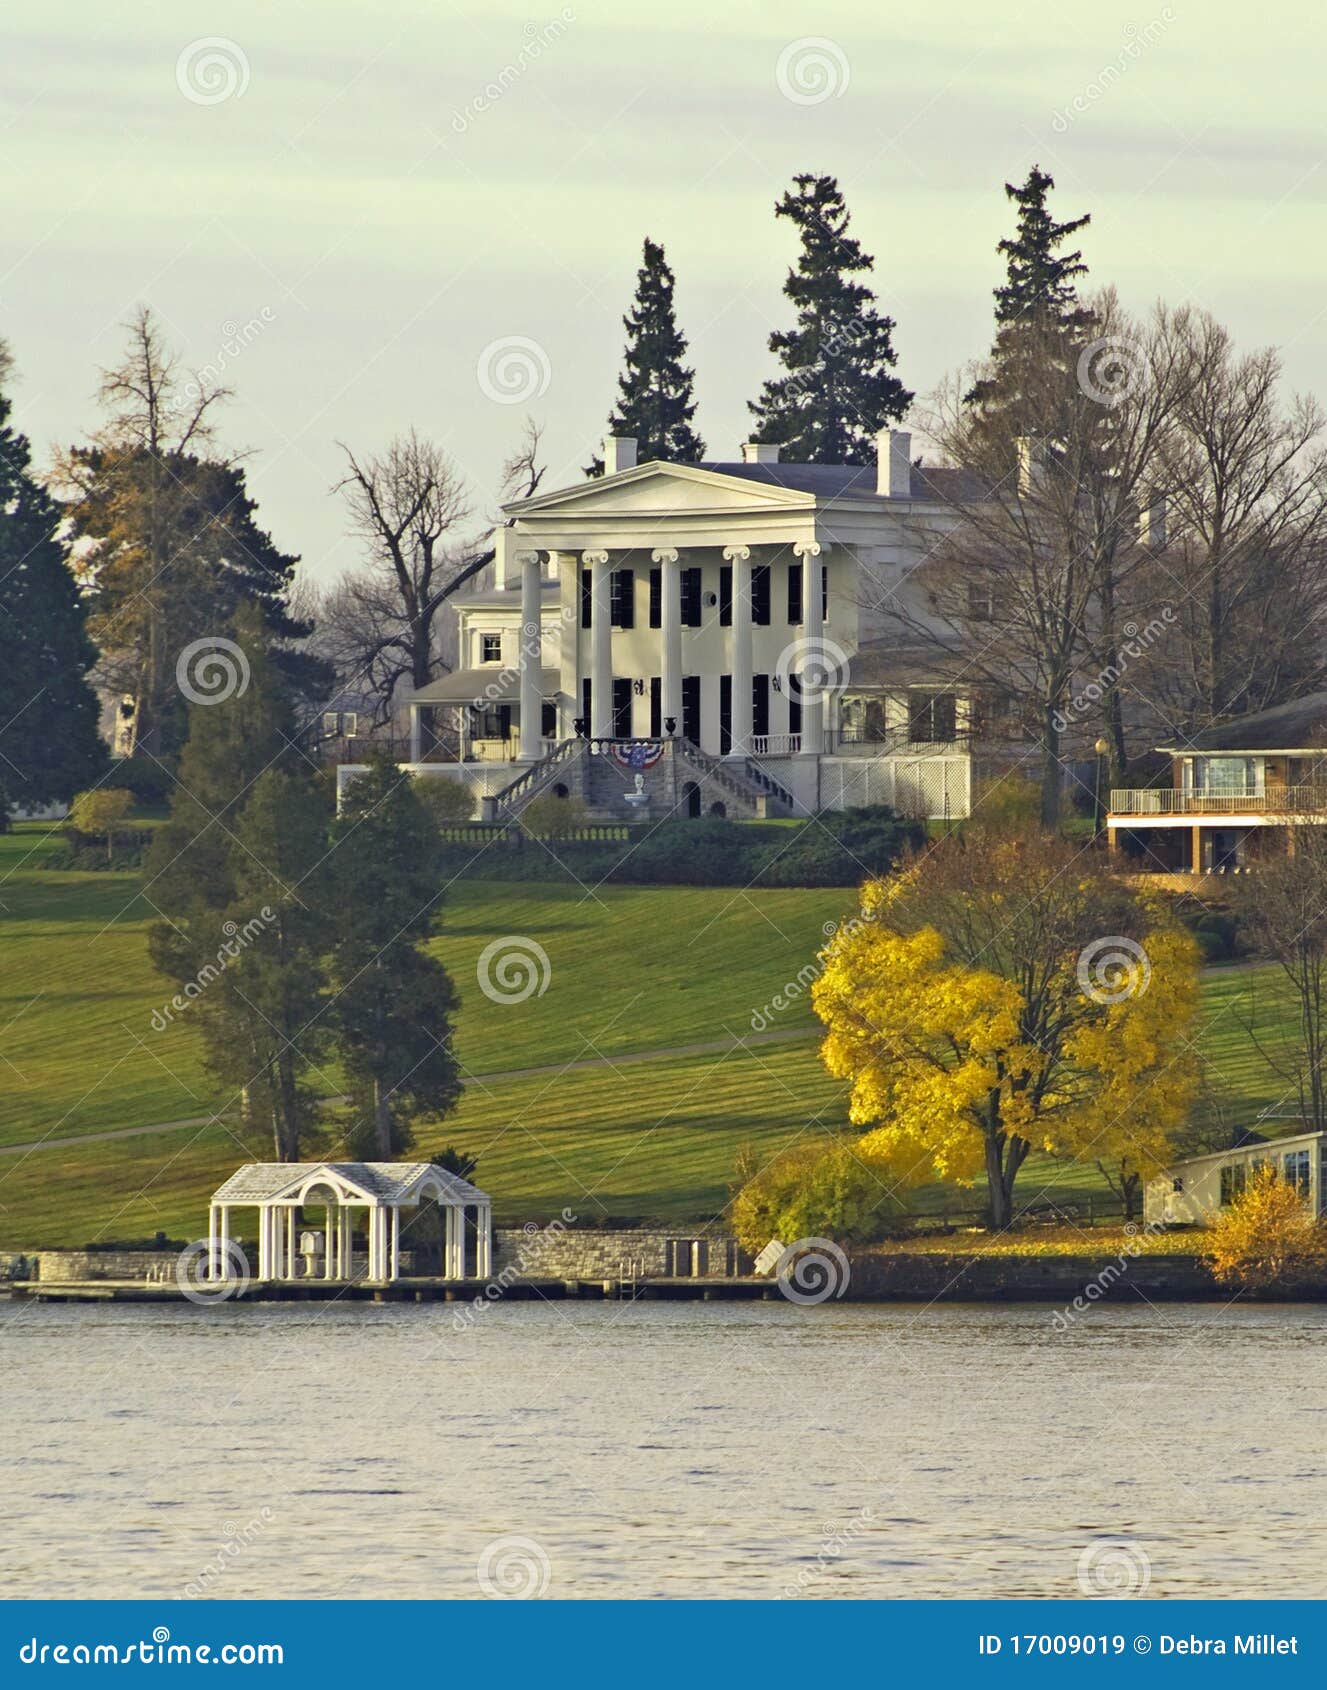 lakeshore mansion